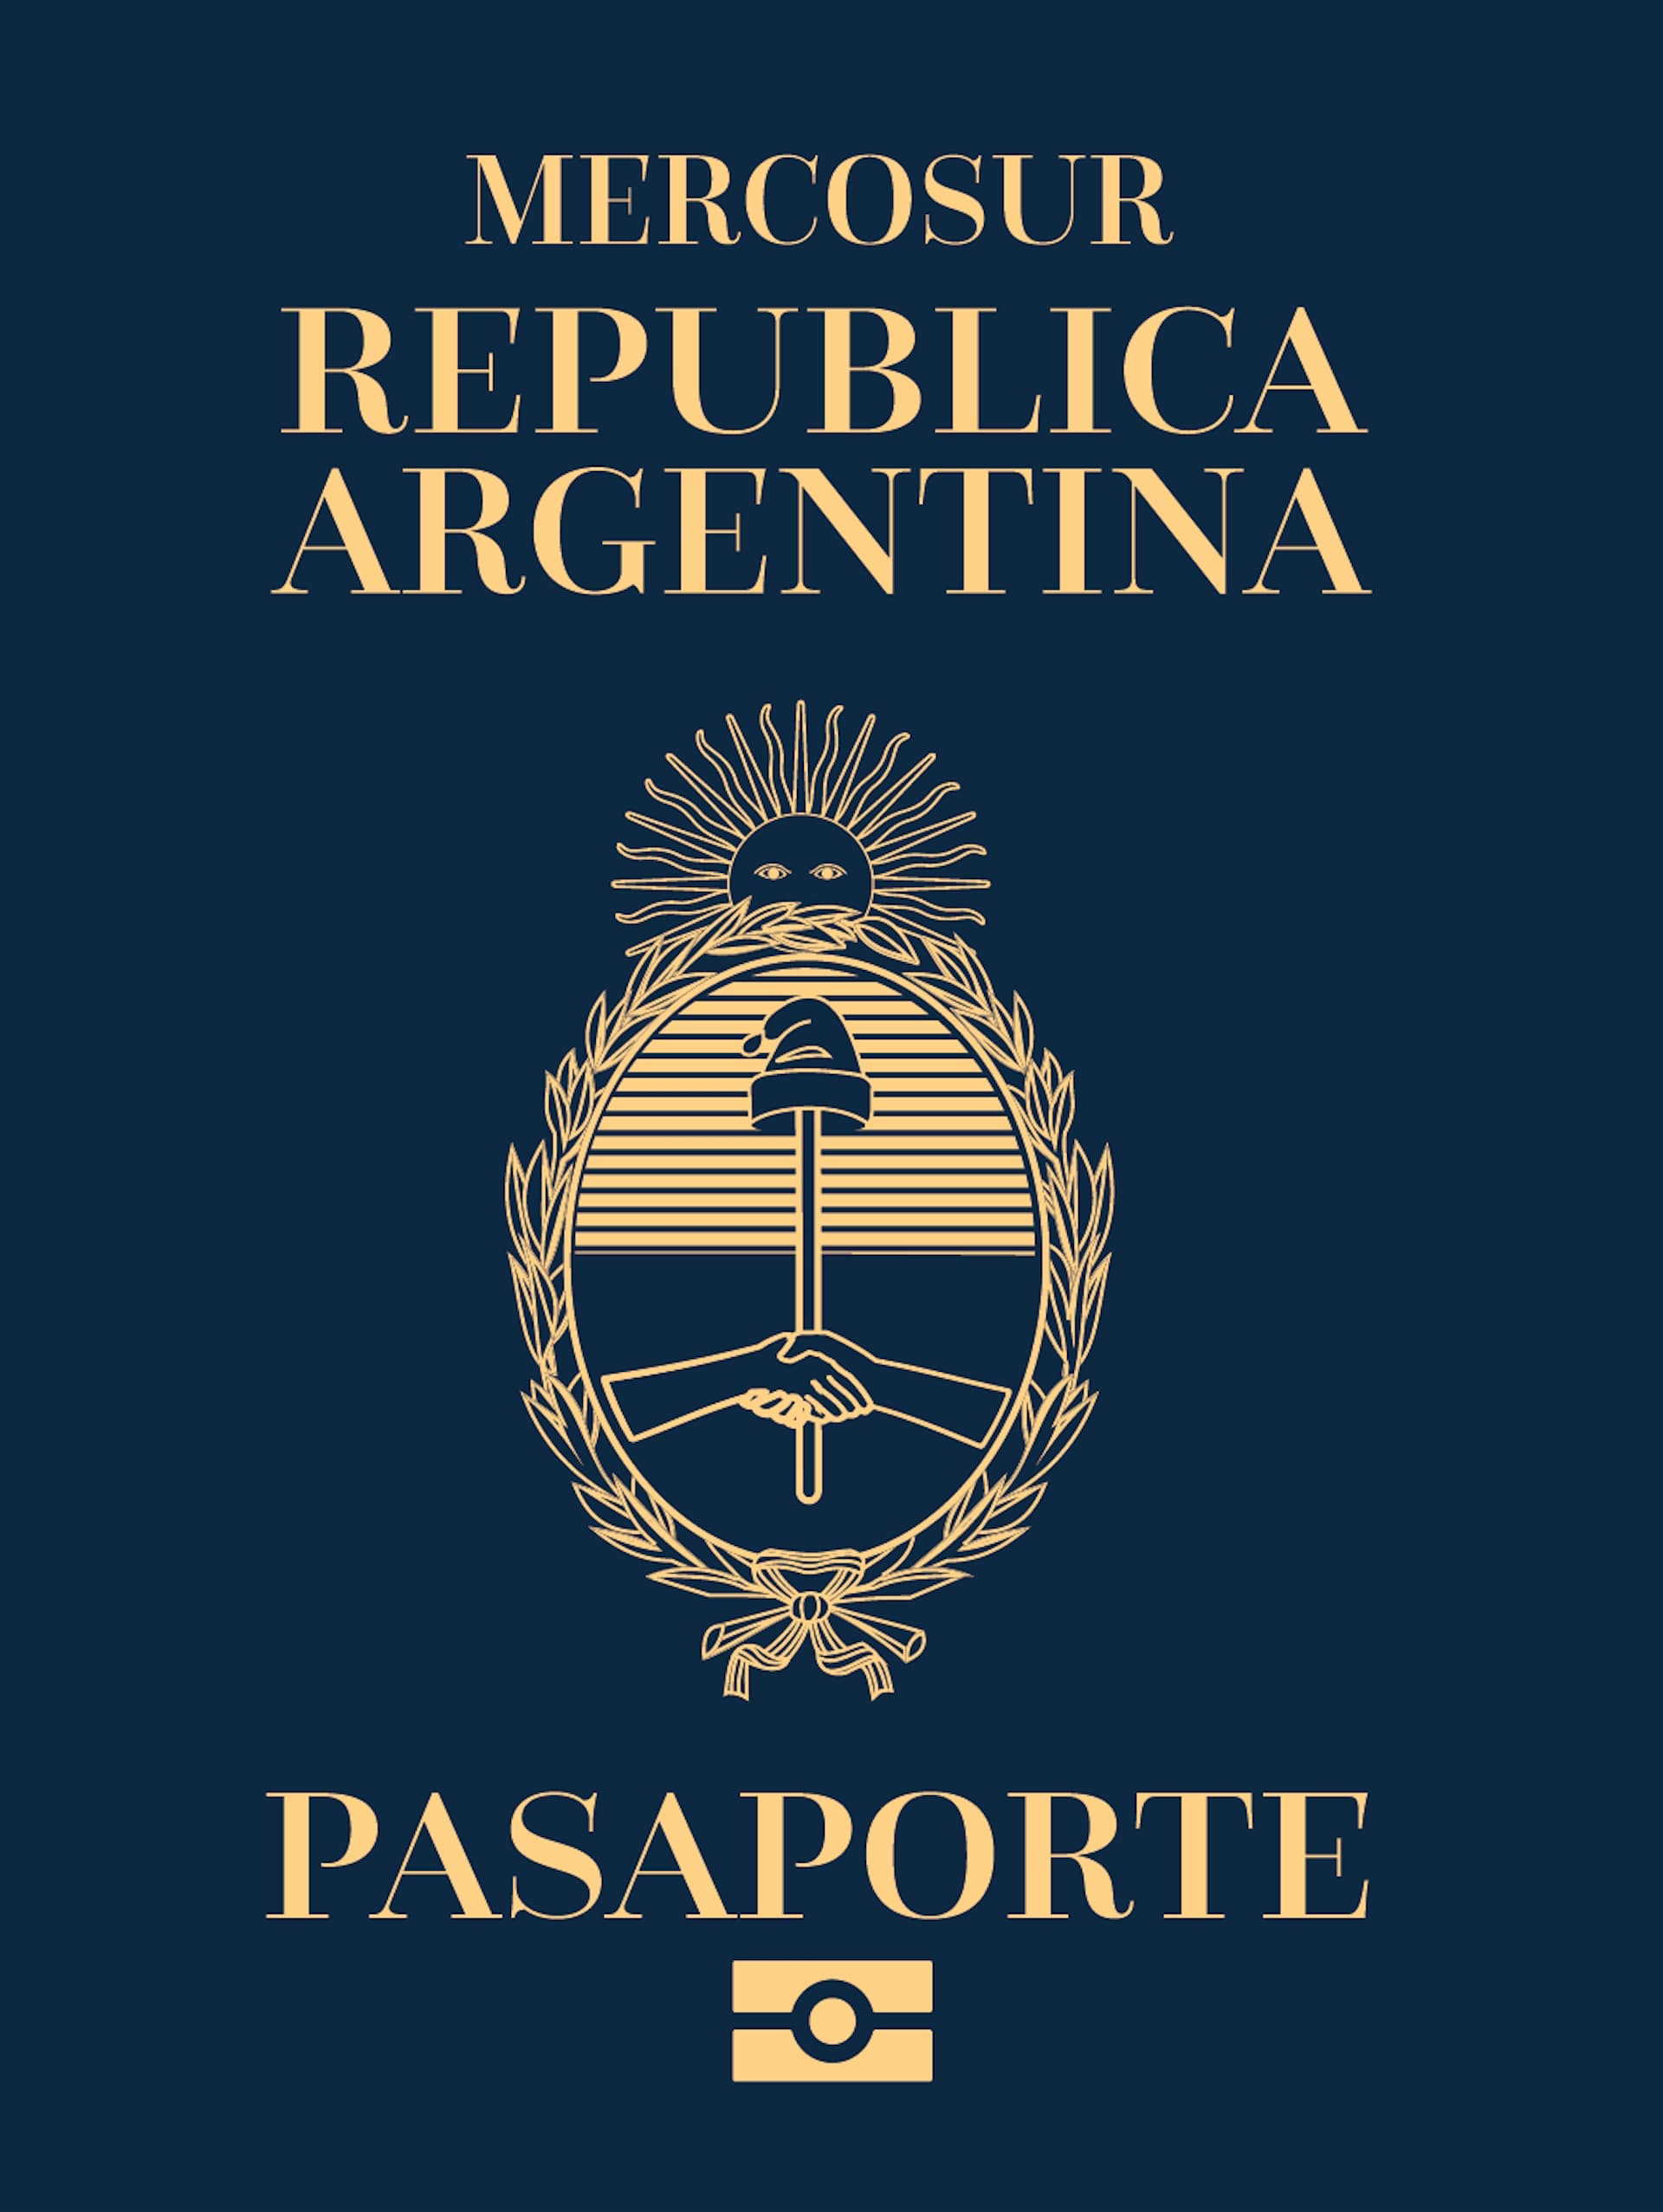 El pasaporte de Argentina ocupa el puesto 20 a nivel mundial